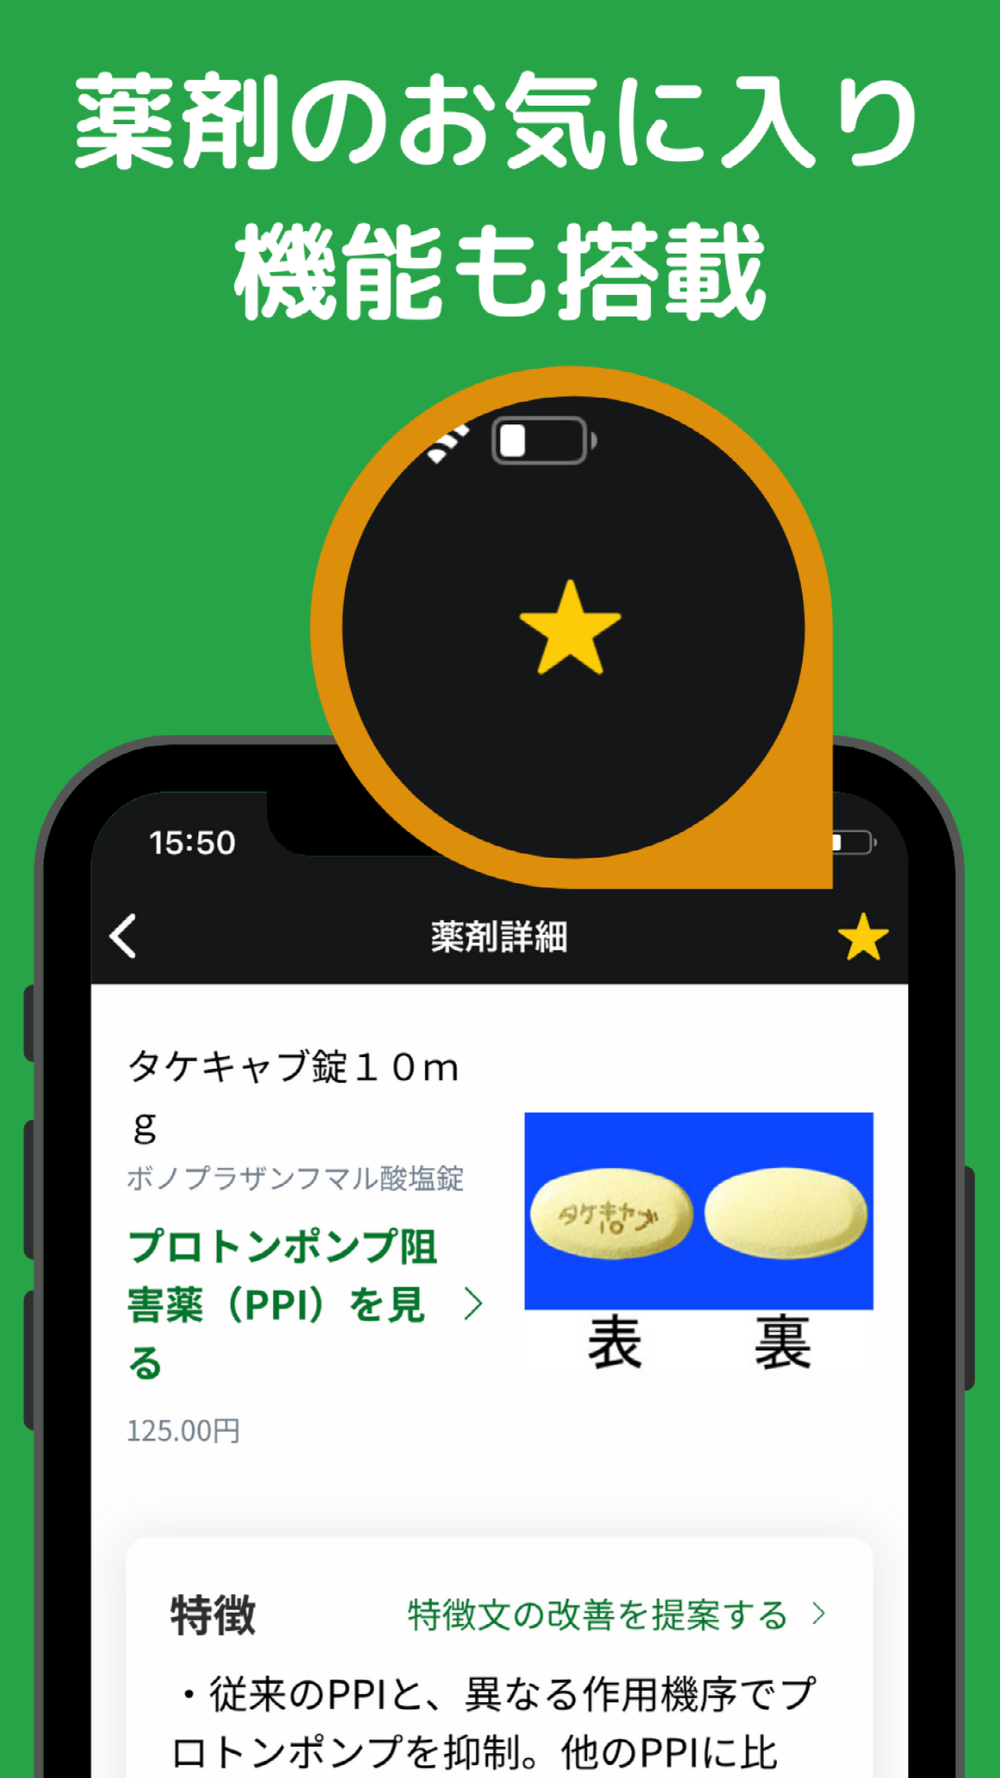 イシヤク Free Download App For Iphone Steprimo Com